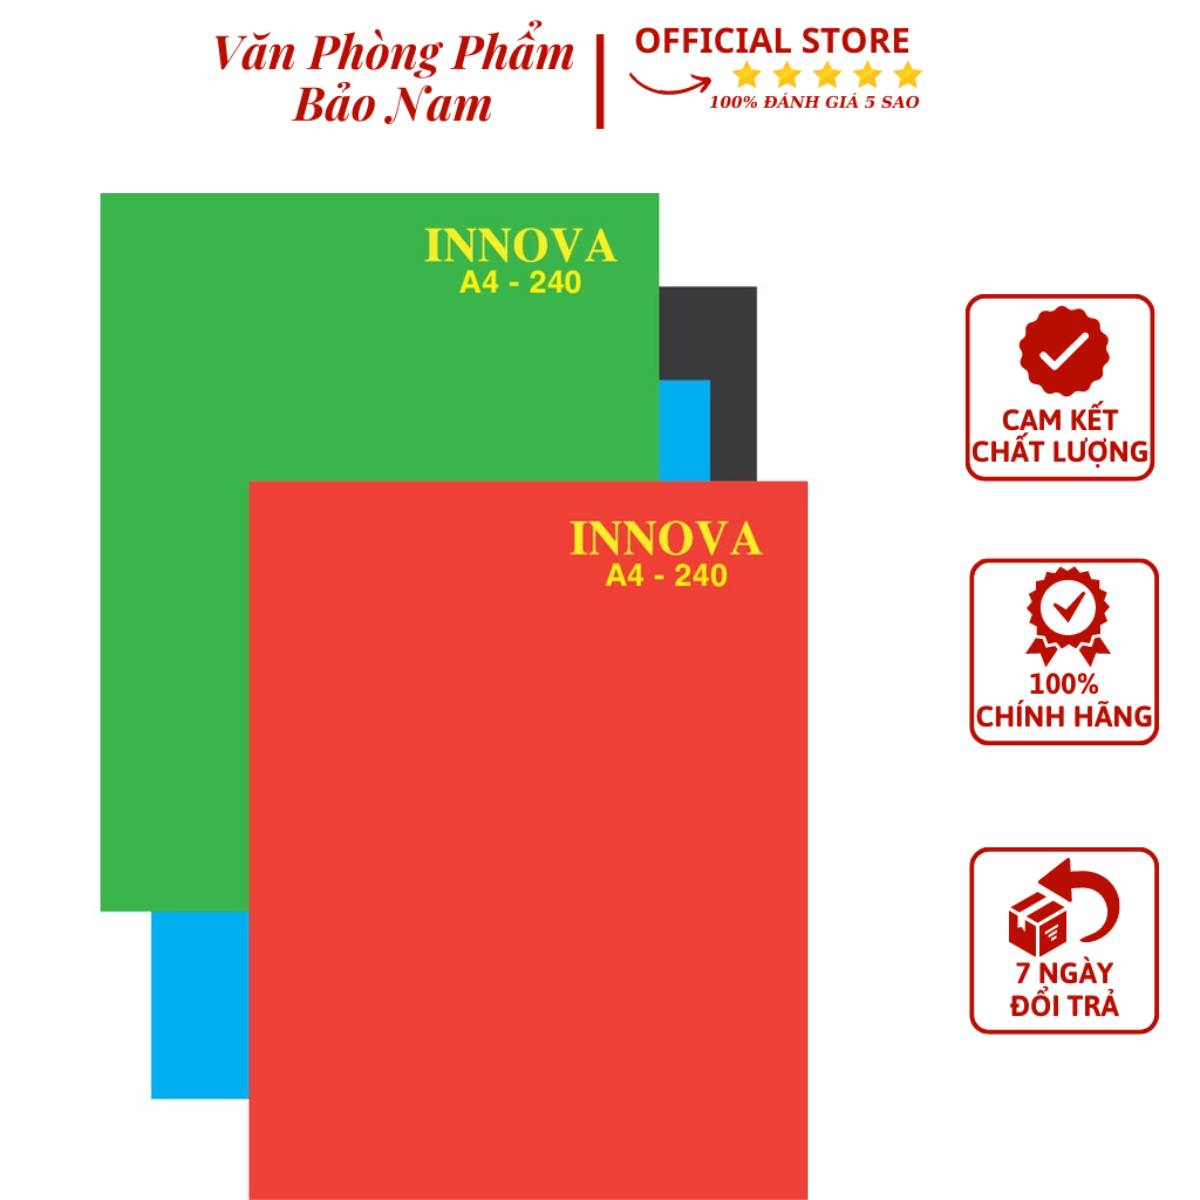 Sổ Bìa Cứng Innova A4 (Bìa Màu Xanh, Đỏ) Hải Tiến - Thừa Đầu - Văn Phòng Phẩm Bảo Nam